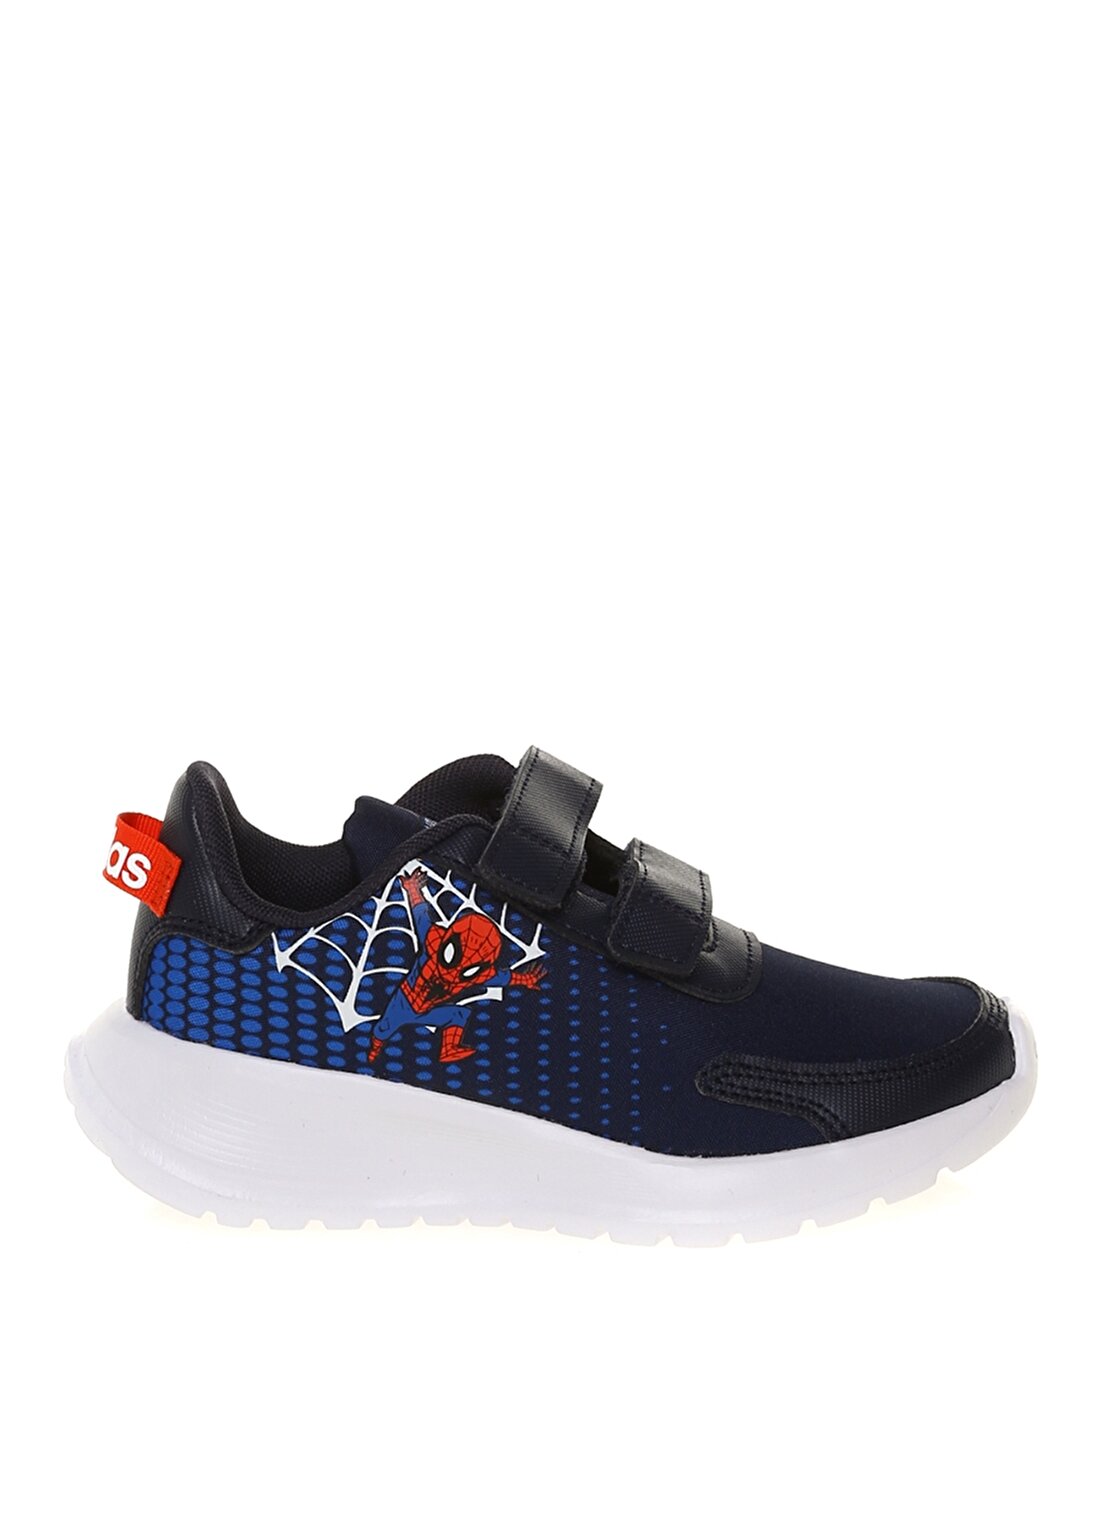 Adidas Tensaur Run C Lacivert - Beyaz Erkek Çocuk Yürüyüş Ayakkabısı